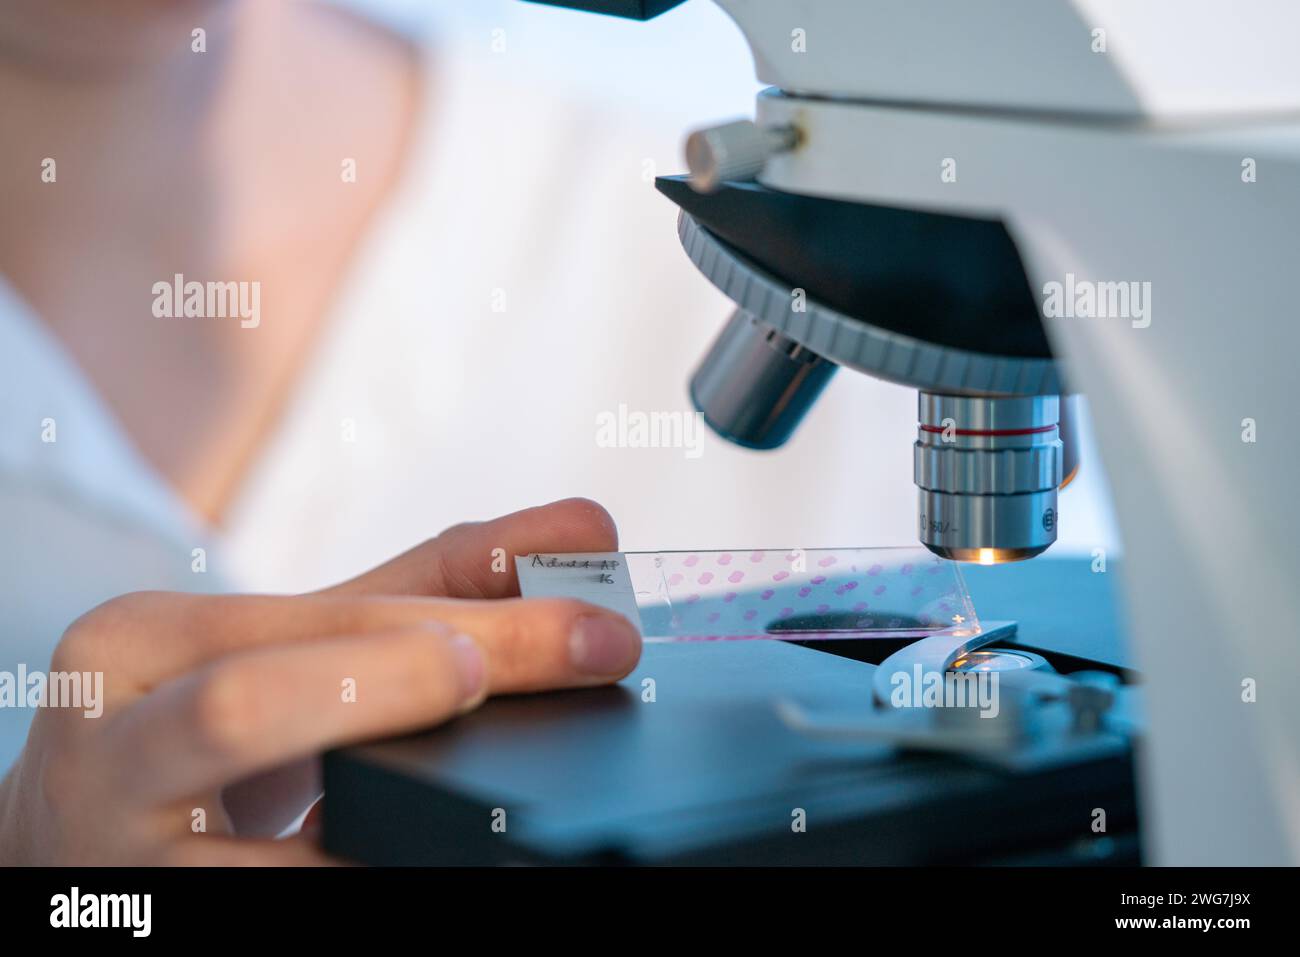 Gewebeanalyse: Biologen untersuchen mit Mikroskopen tierische und pflanzliche Gewebe, um deren Struktur und Funktion zu verstehen. Stockfoto